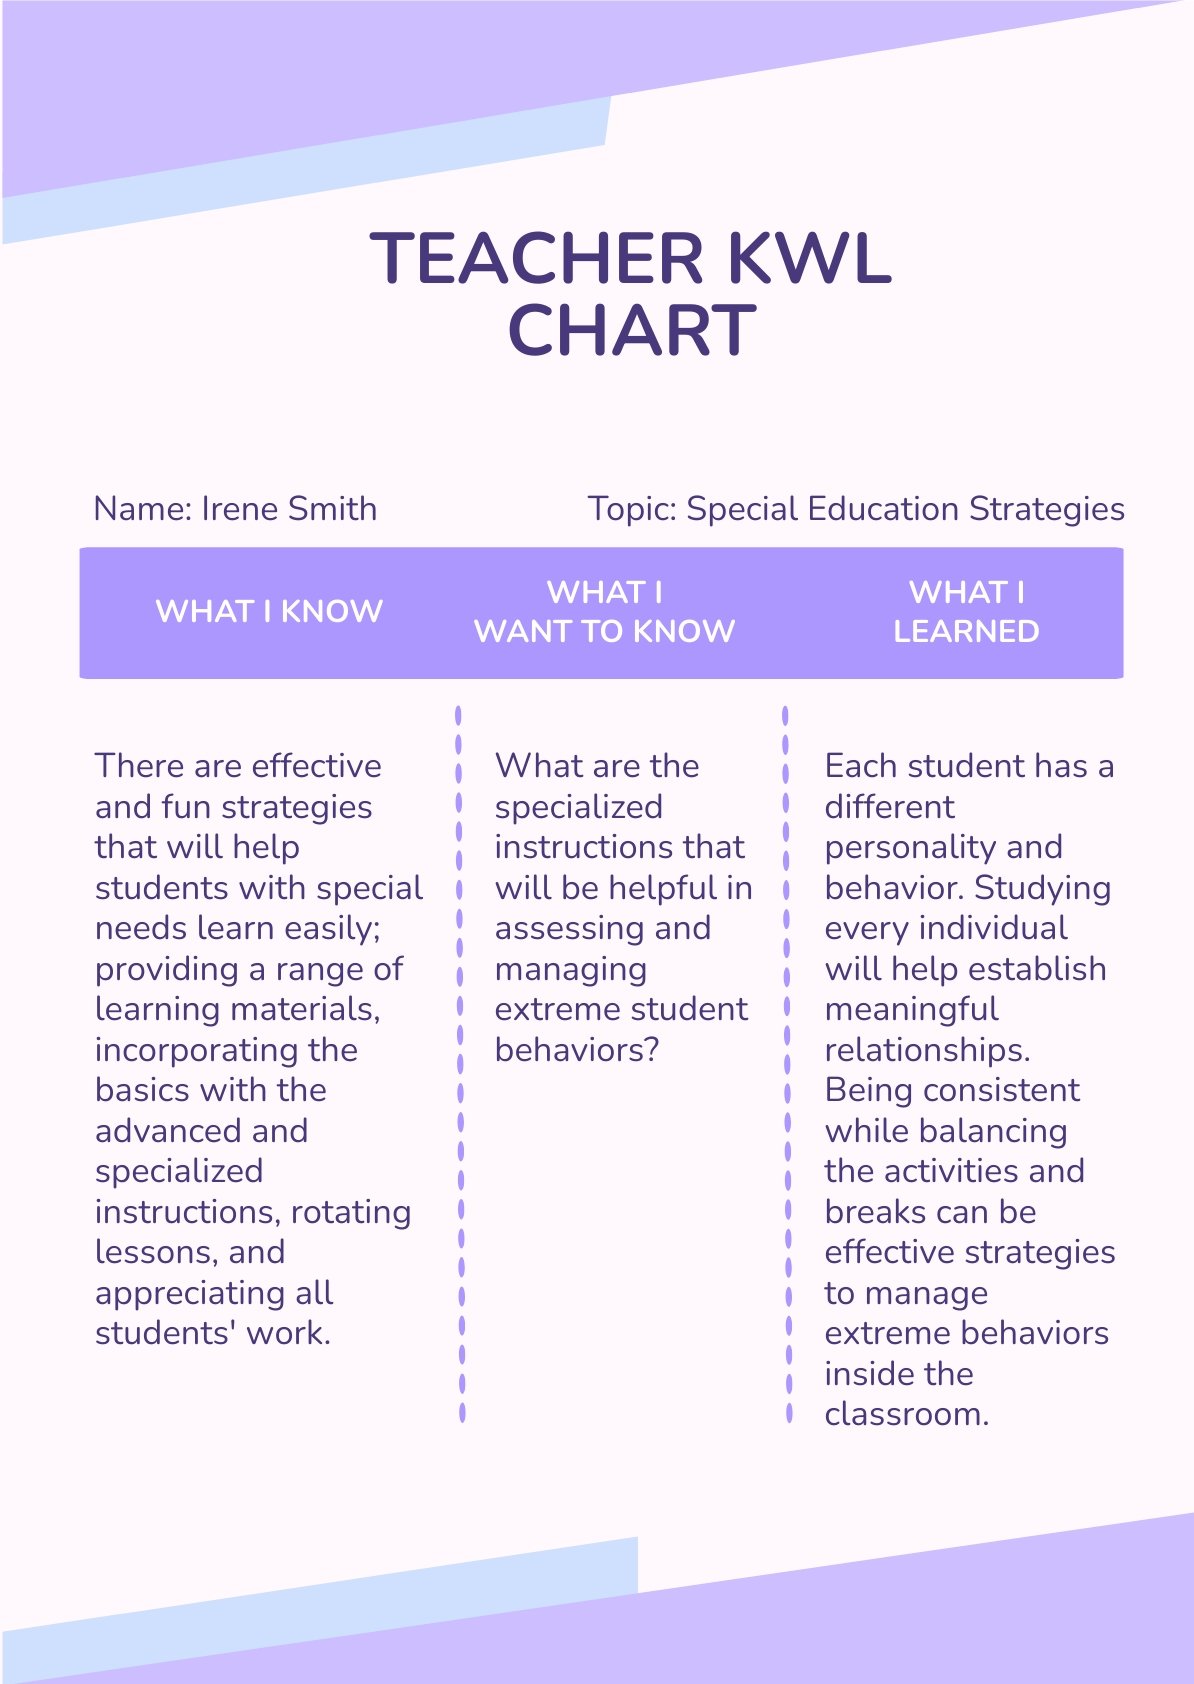 Teacher KWL Chart Template in PSD